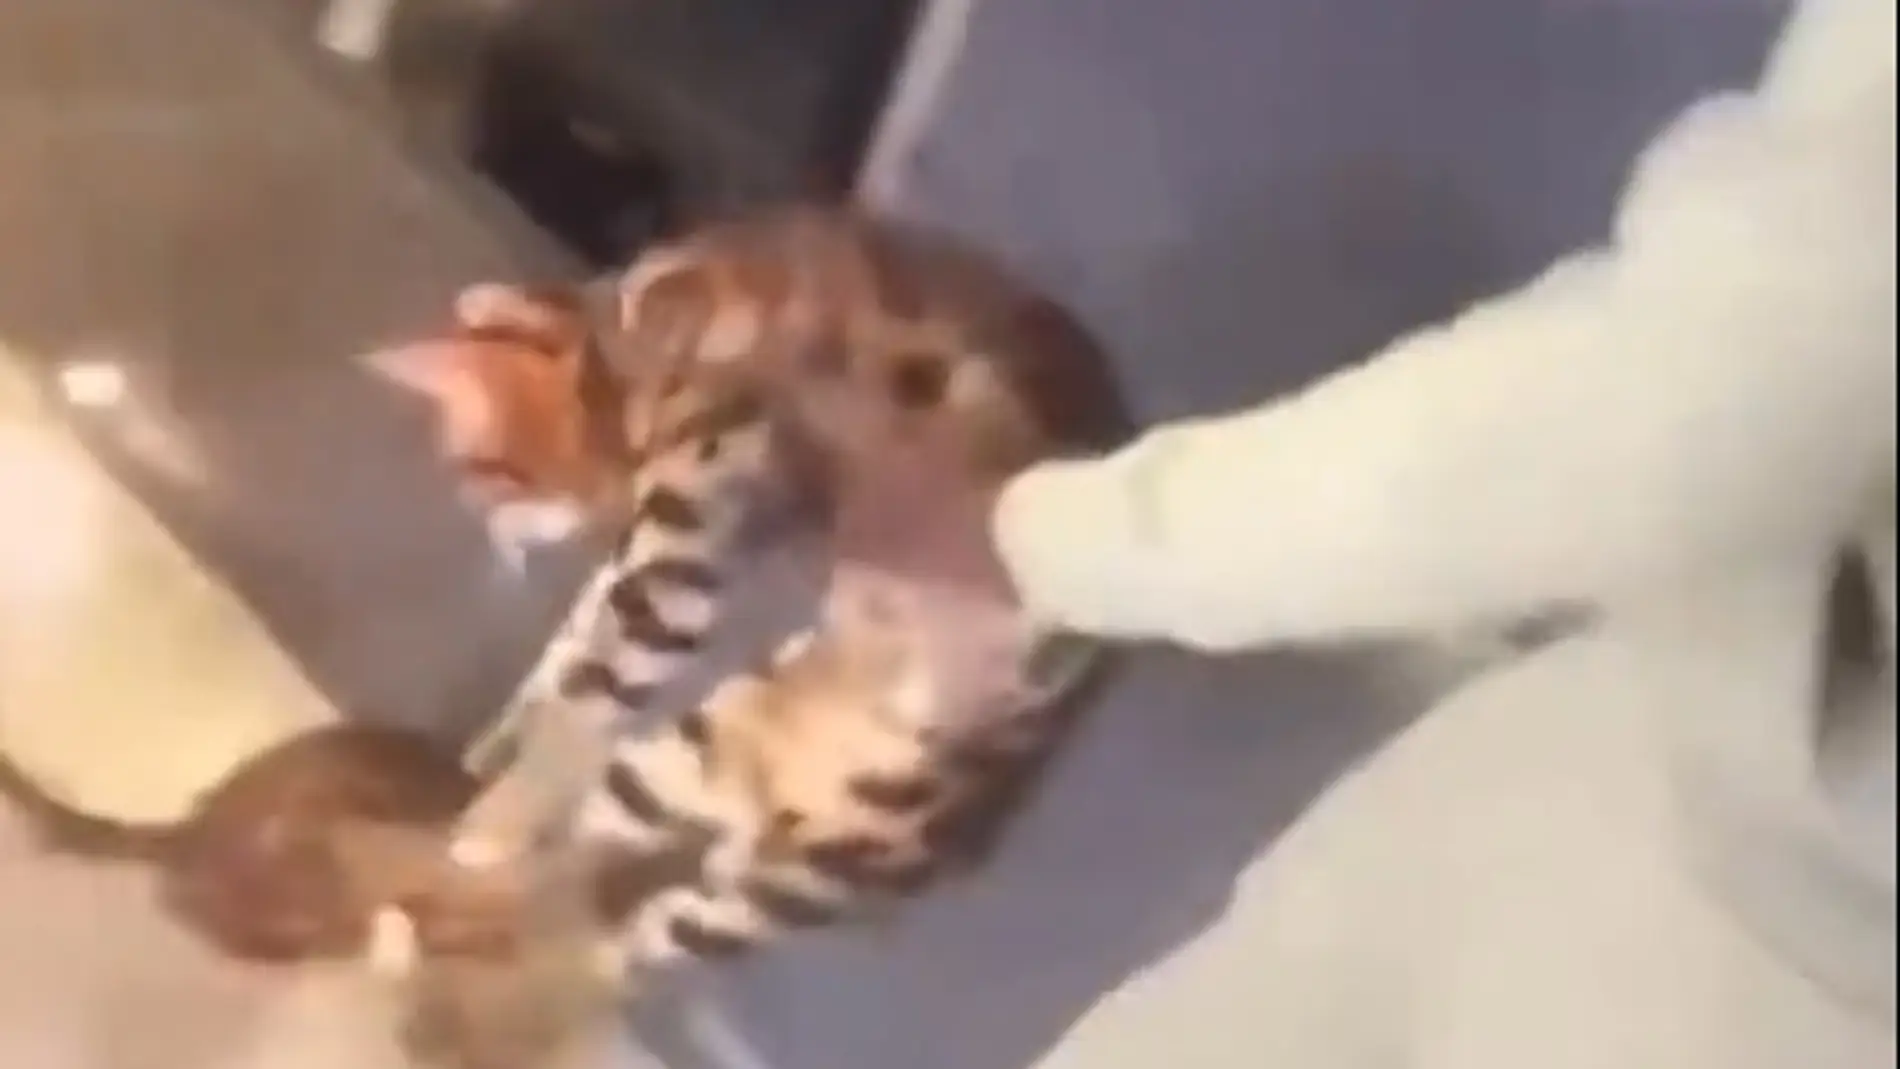 El indignante video del futbolista, Kurt Zouma, maltratando a un gato